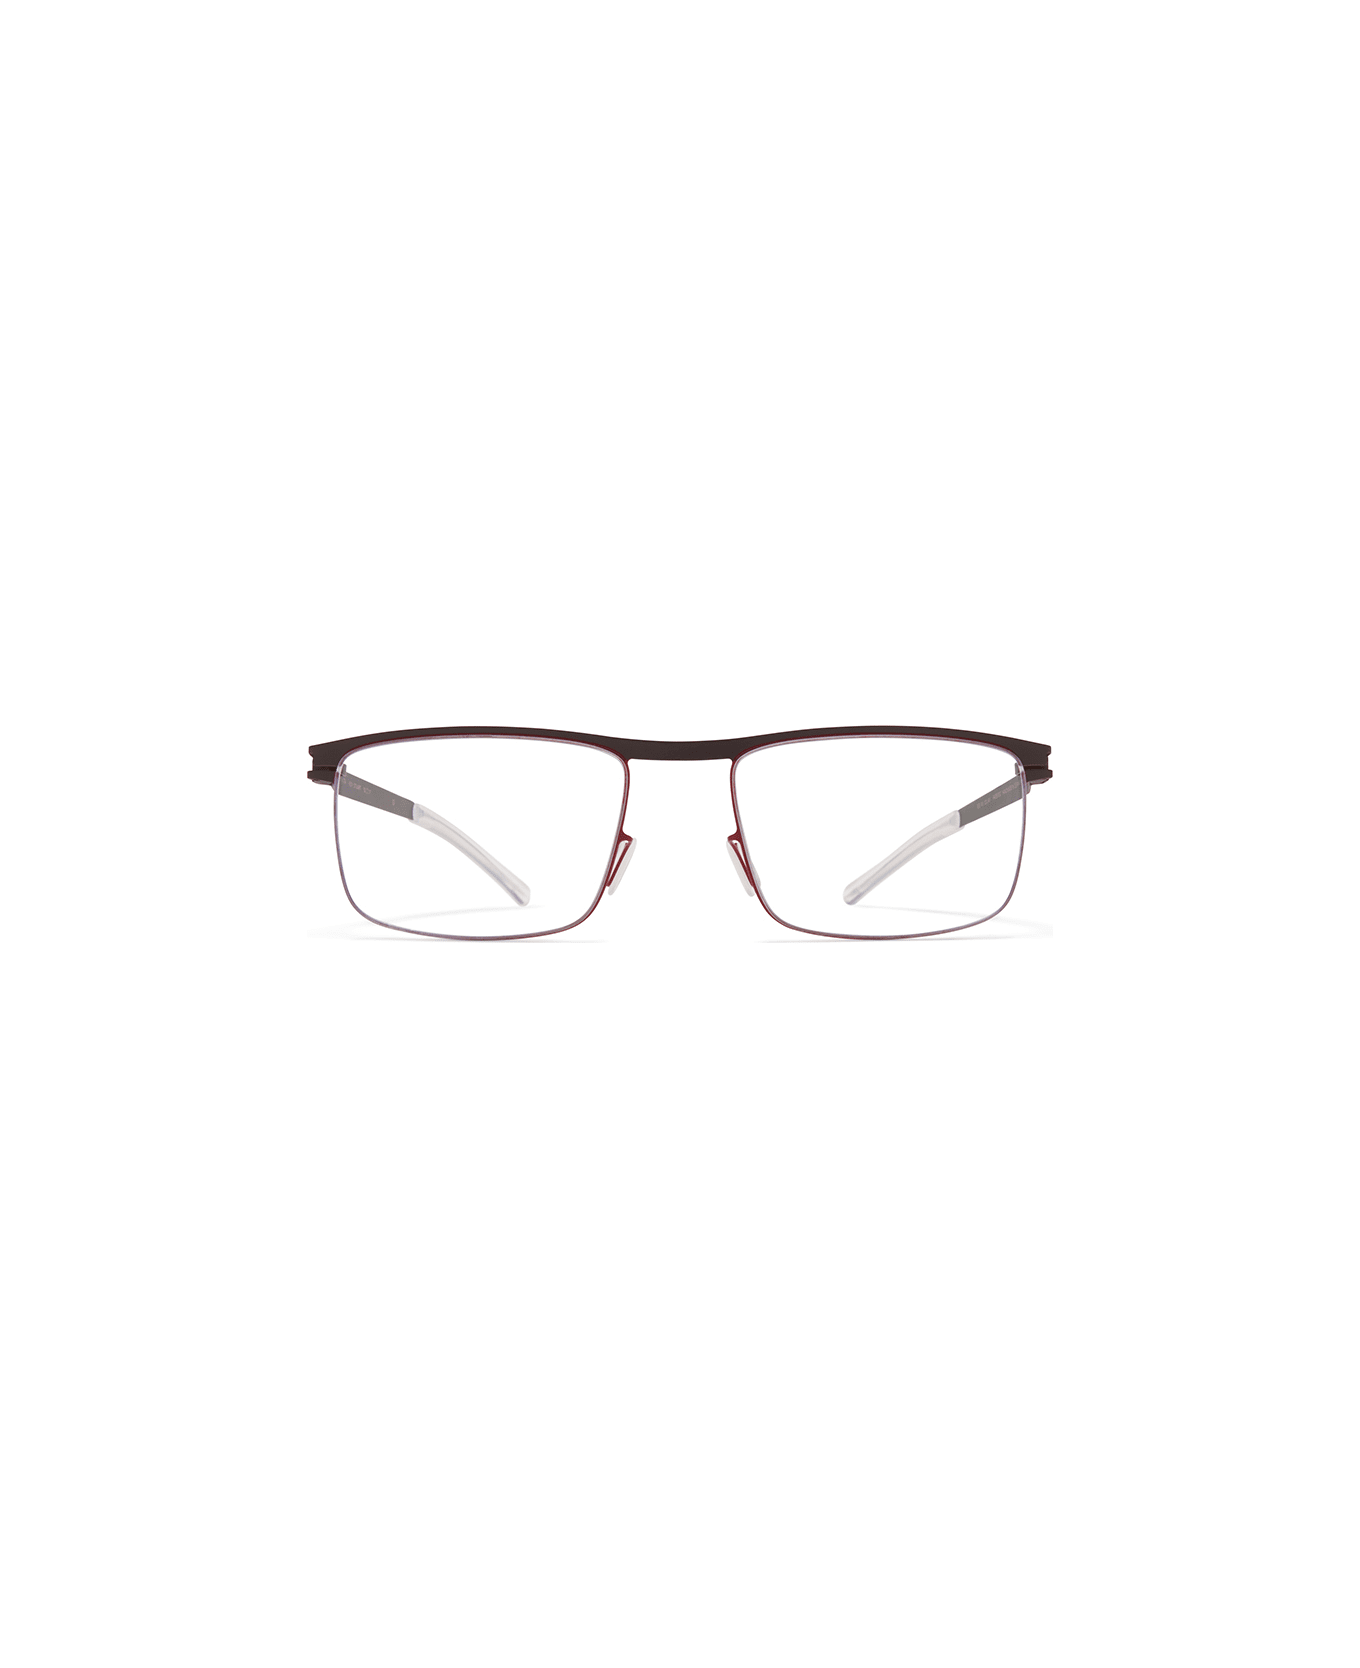 Mykita STUART Eyewear - Ebonybrown/cranberry